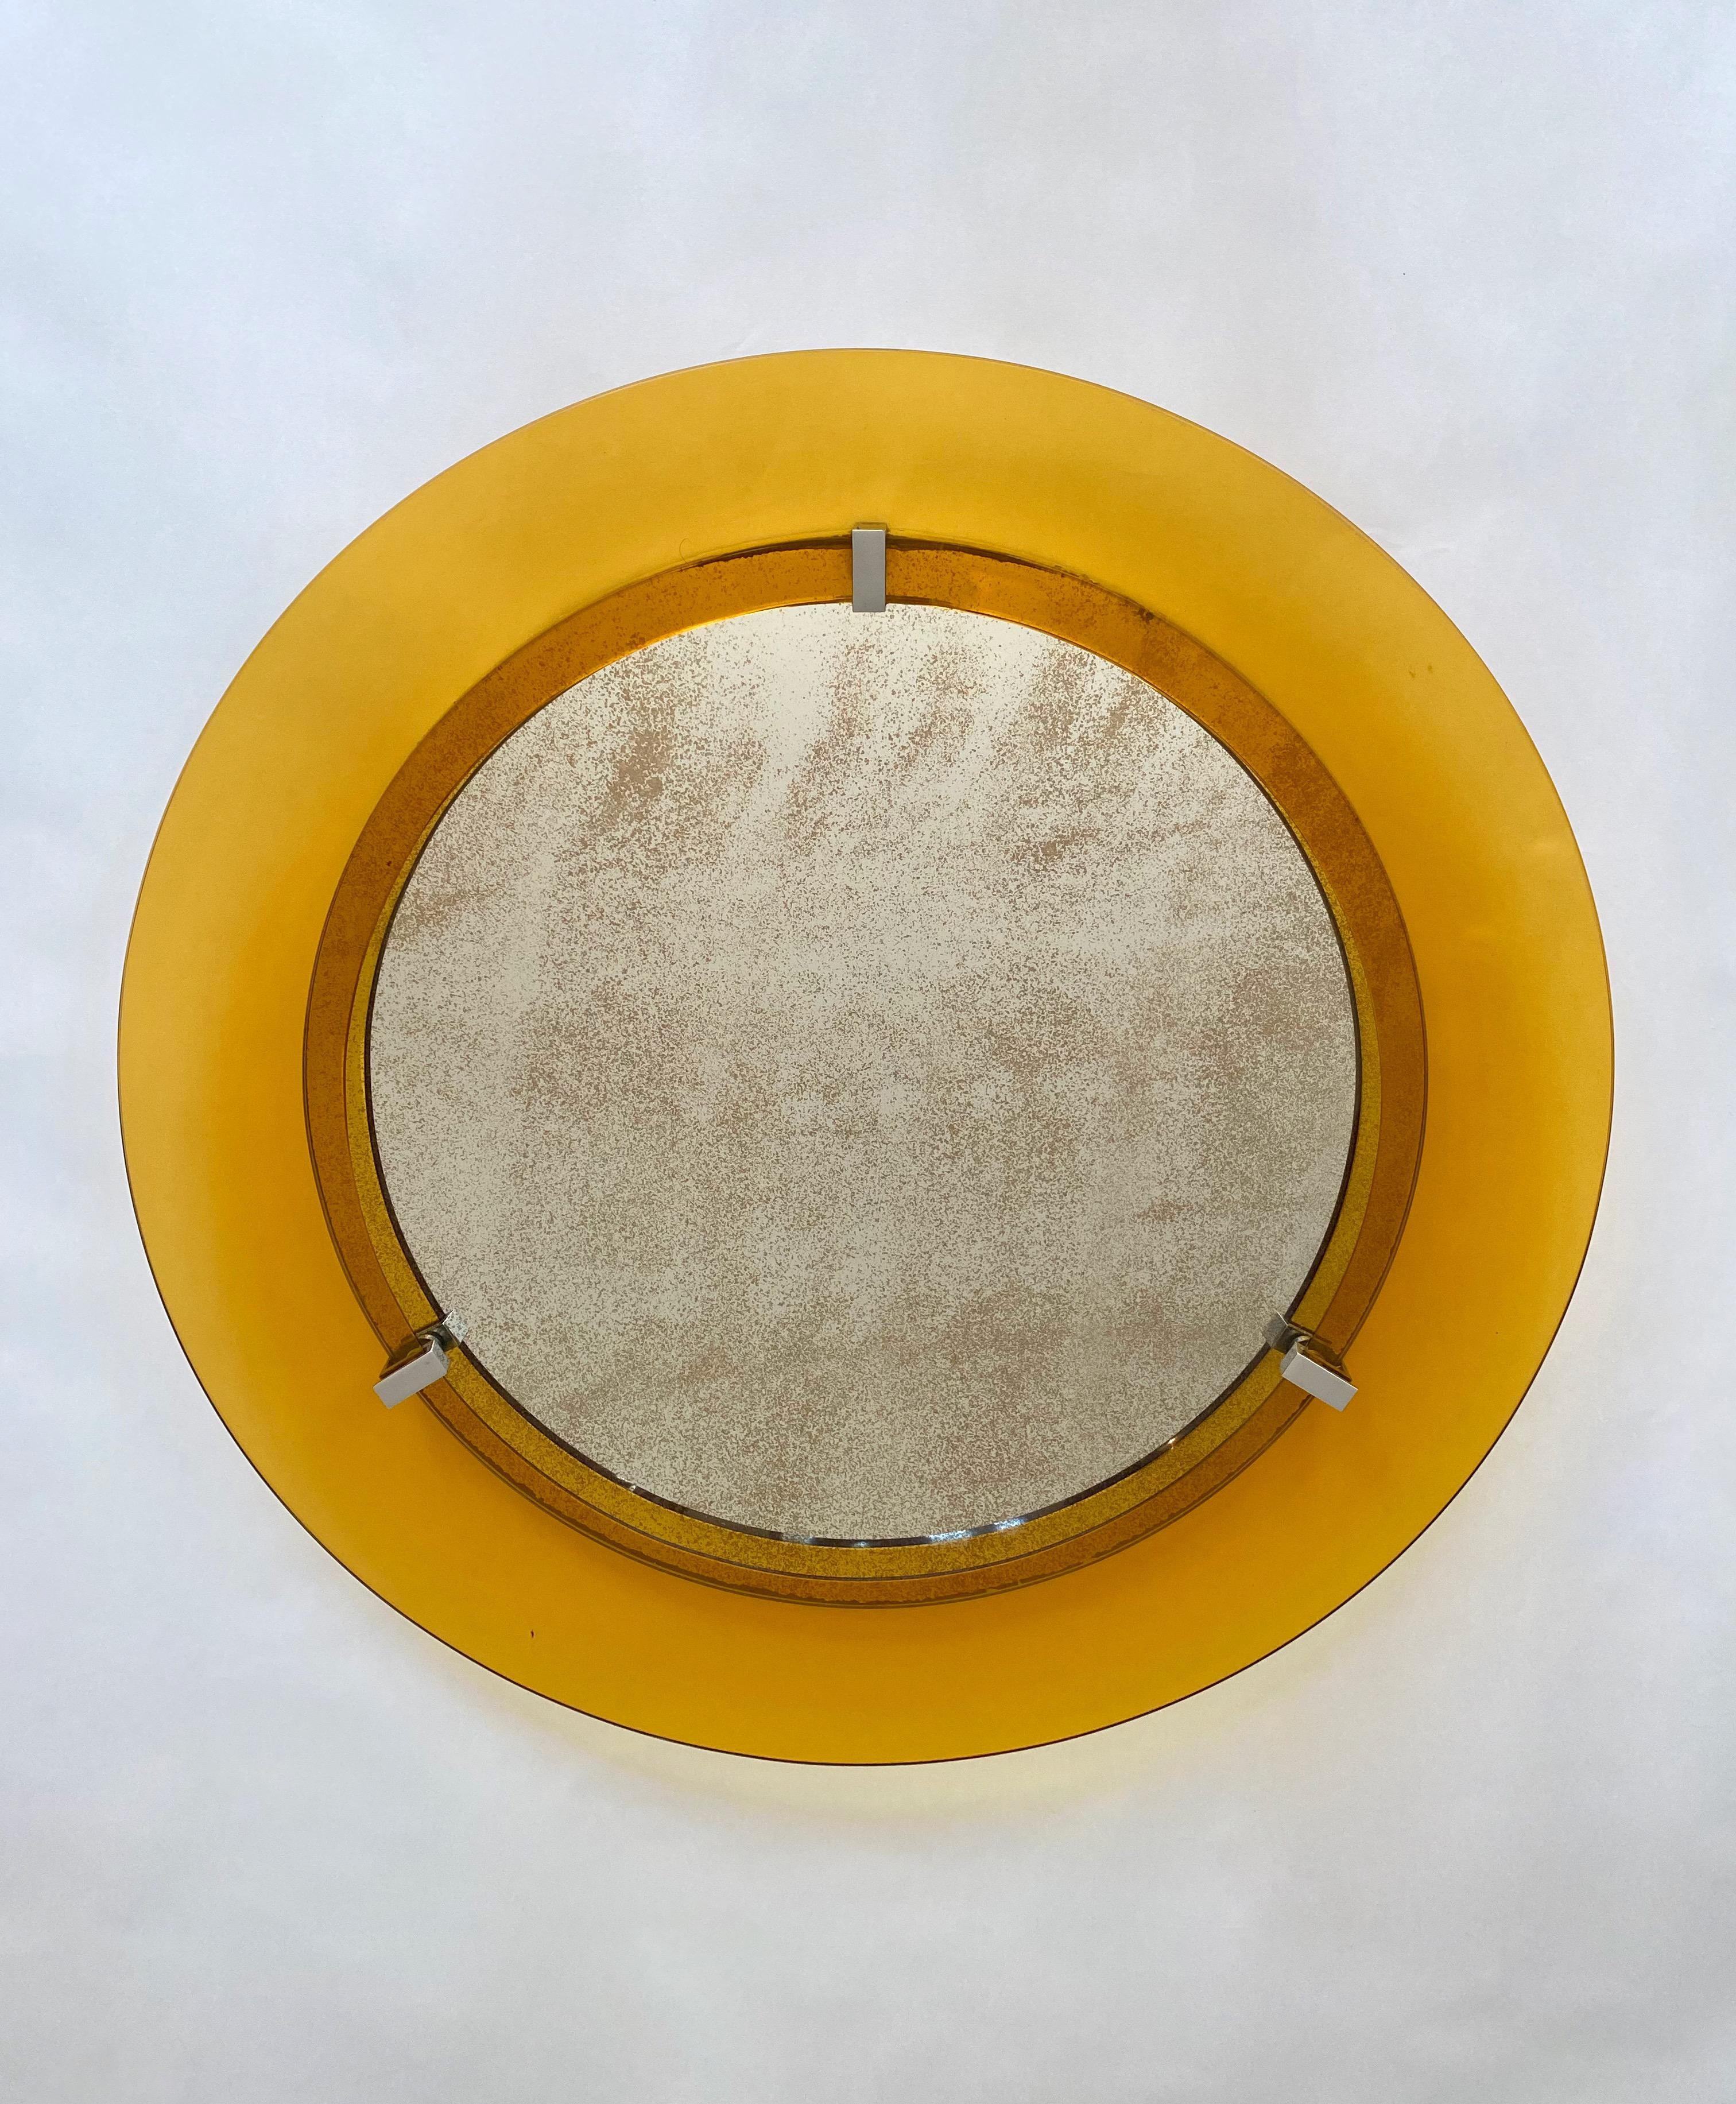 Runder Wandspiegel mit gelbem, konvexem Glasrahmen des italienischen Designhauses Veca (Originaletikett noch vorhanden), 1960er Jahre.